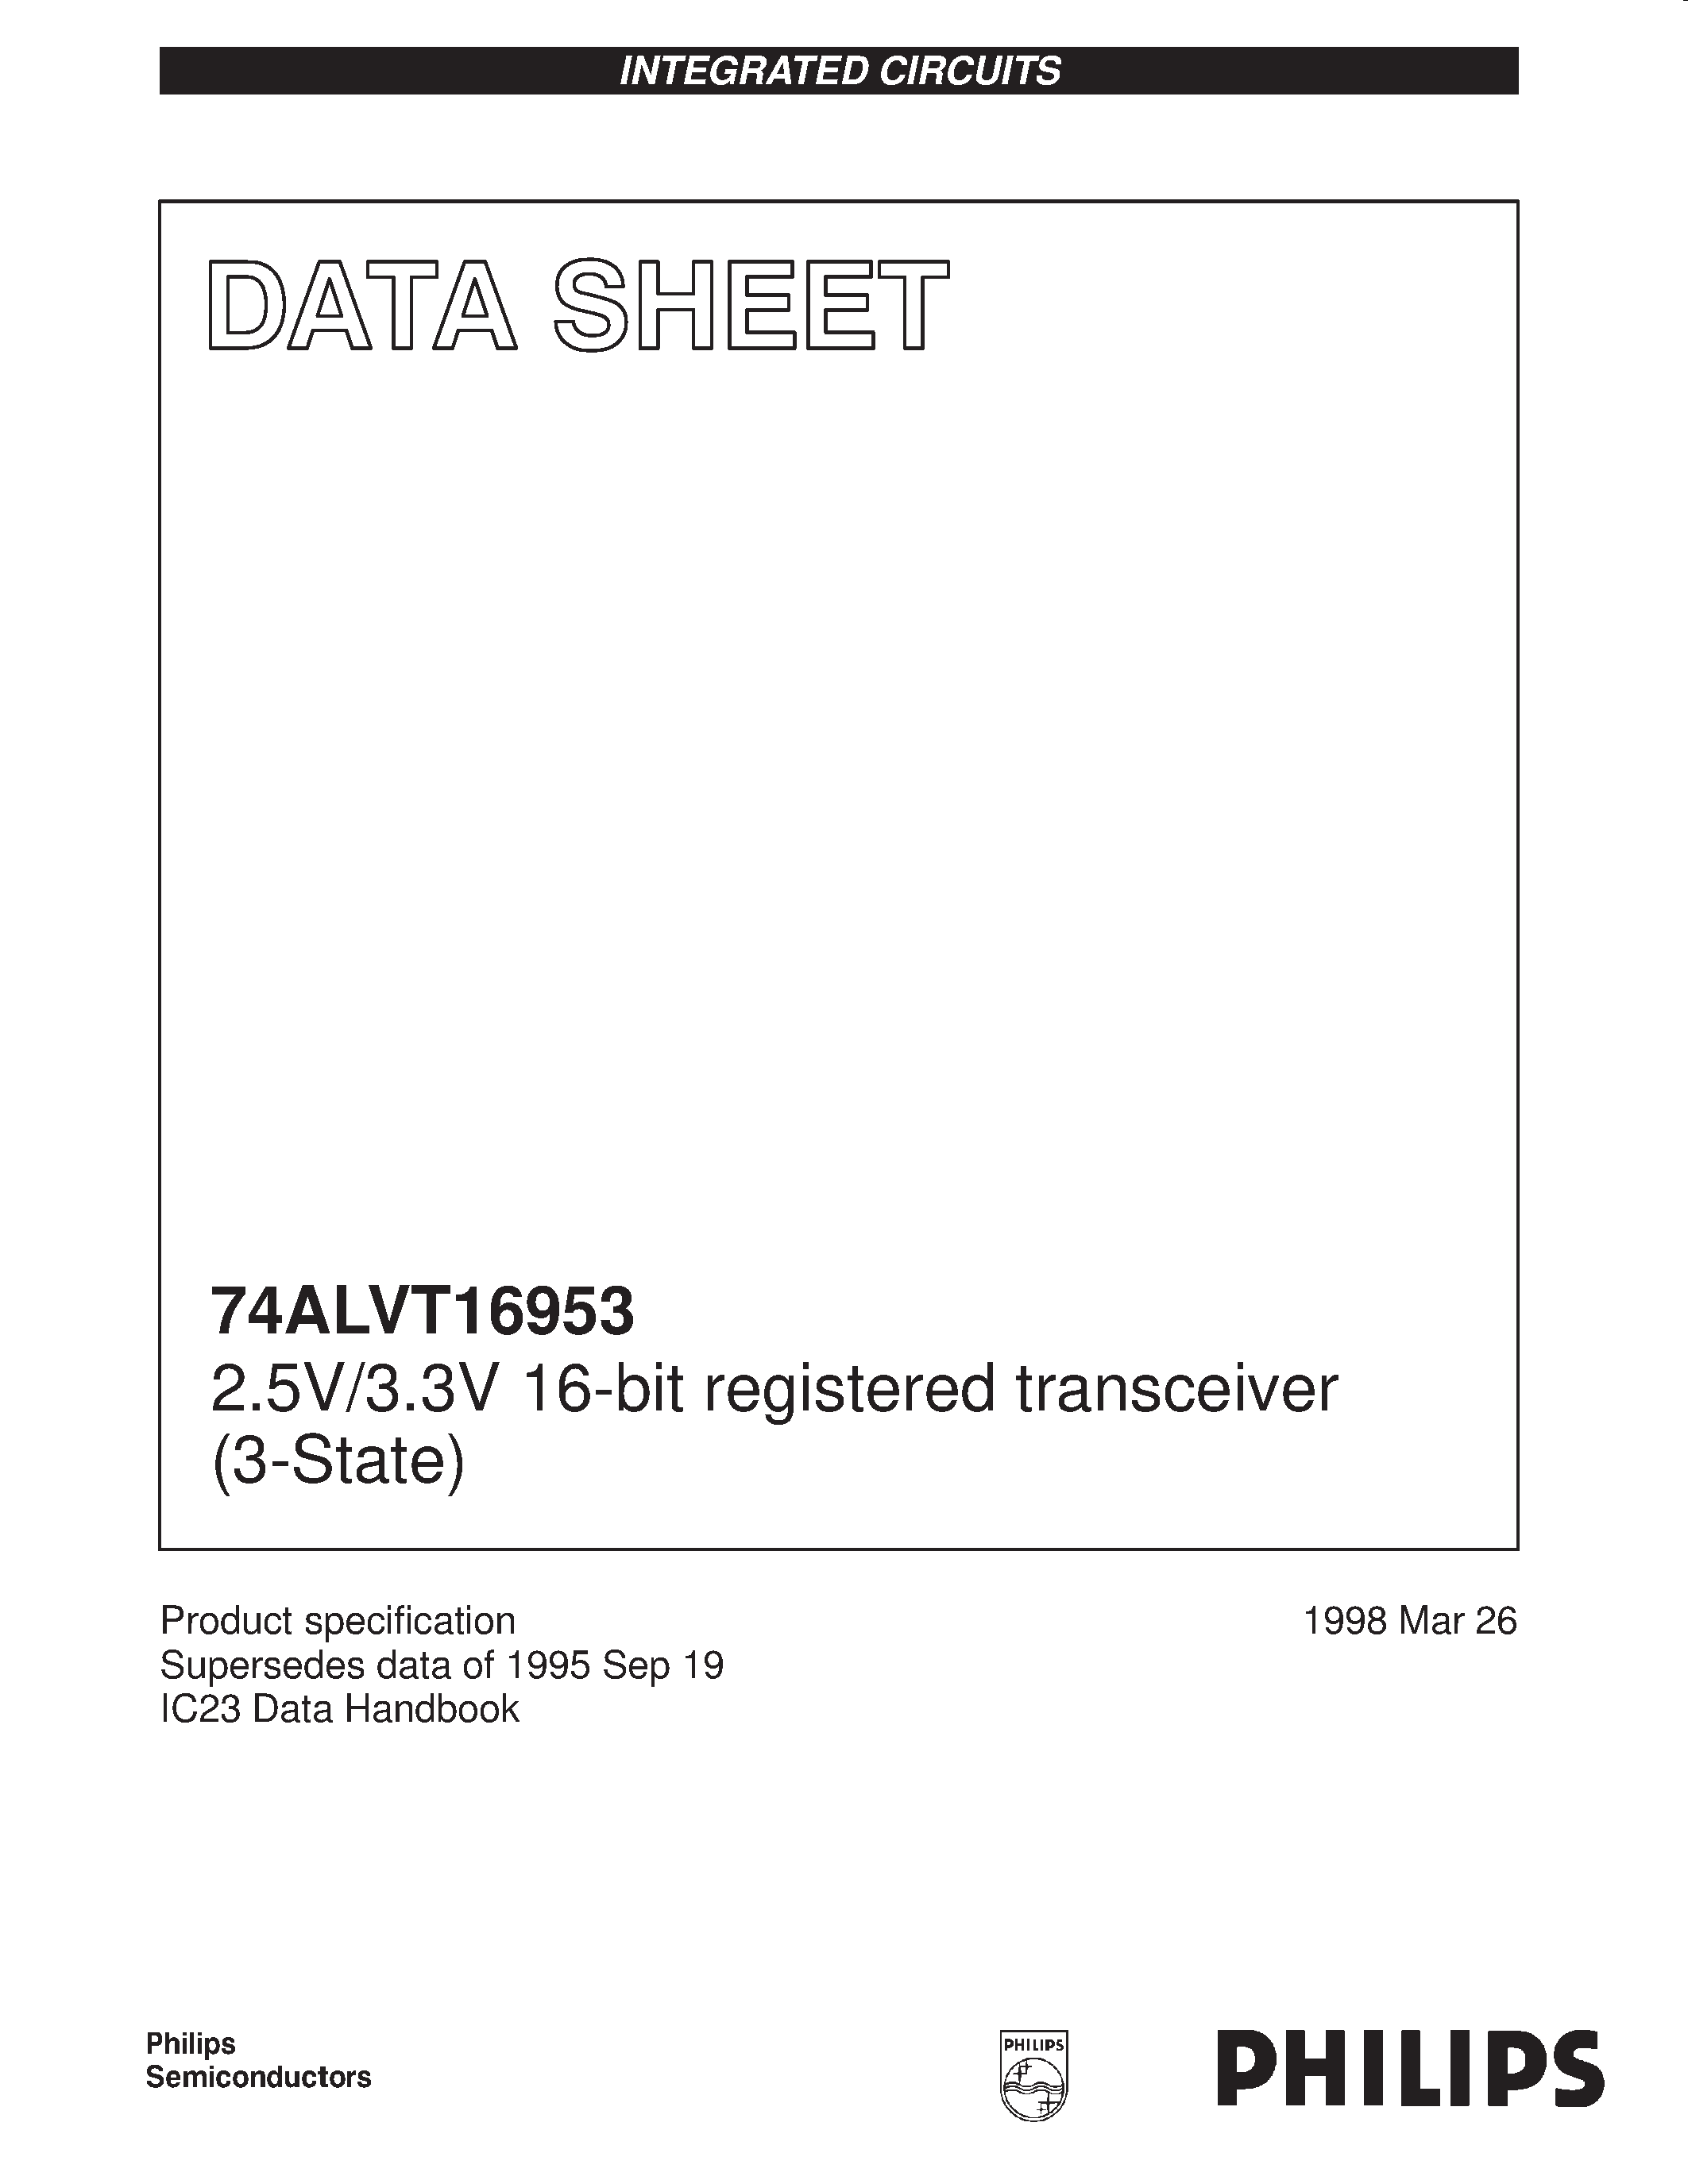 Datasheet 74ALVT16953DL - 2.5V/3.3V 16-bit registered transceiver 3-State page 1